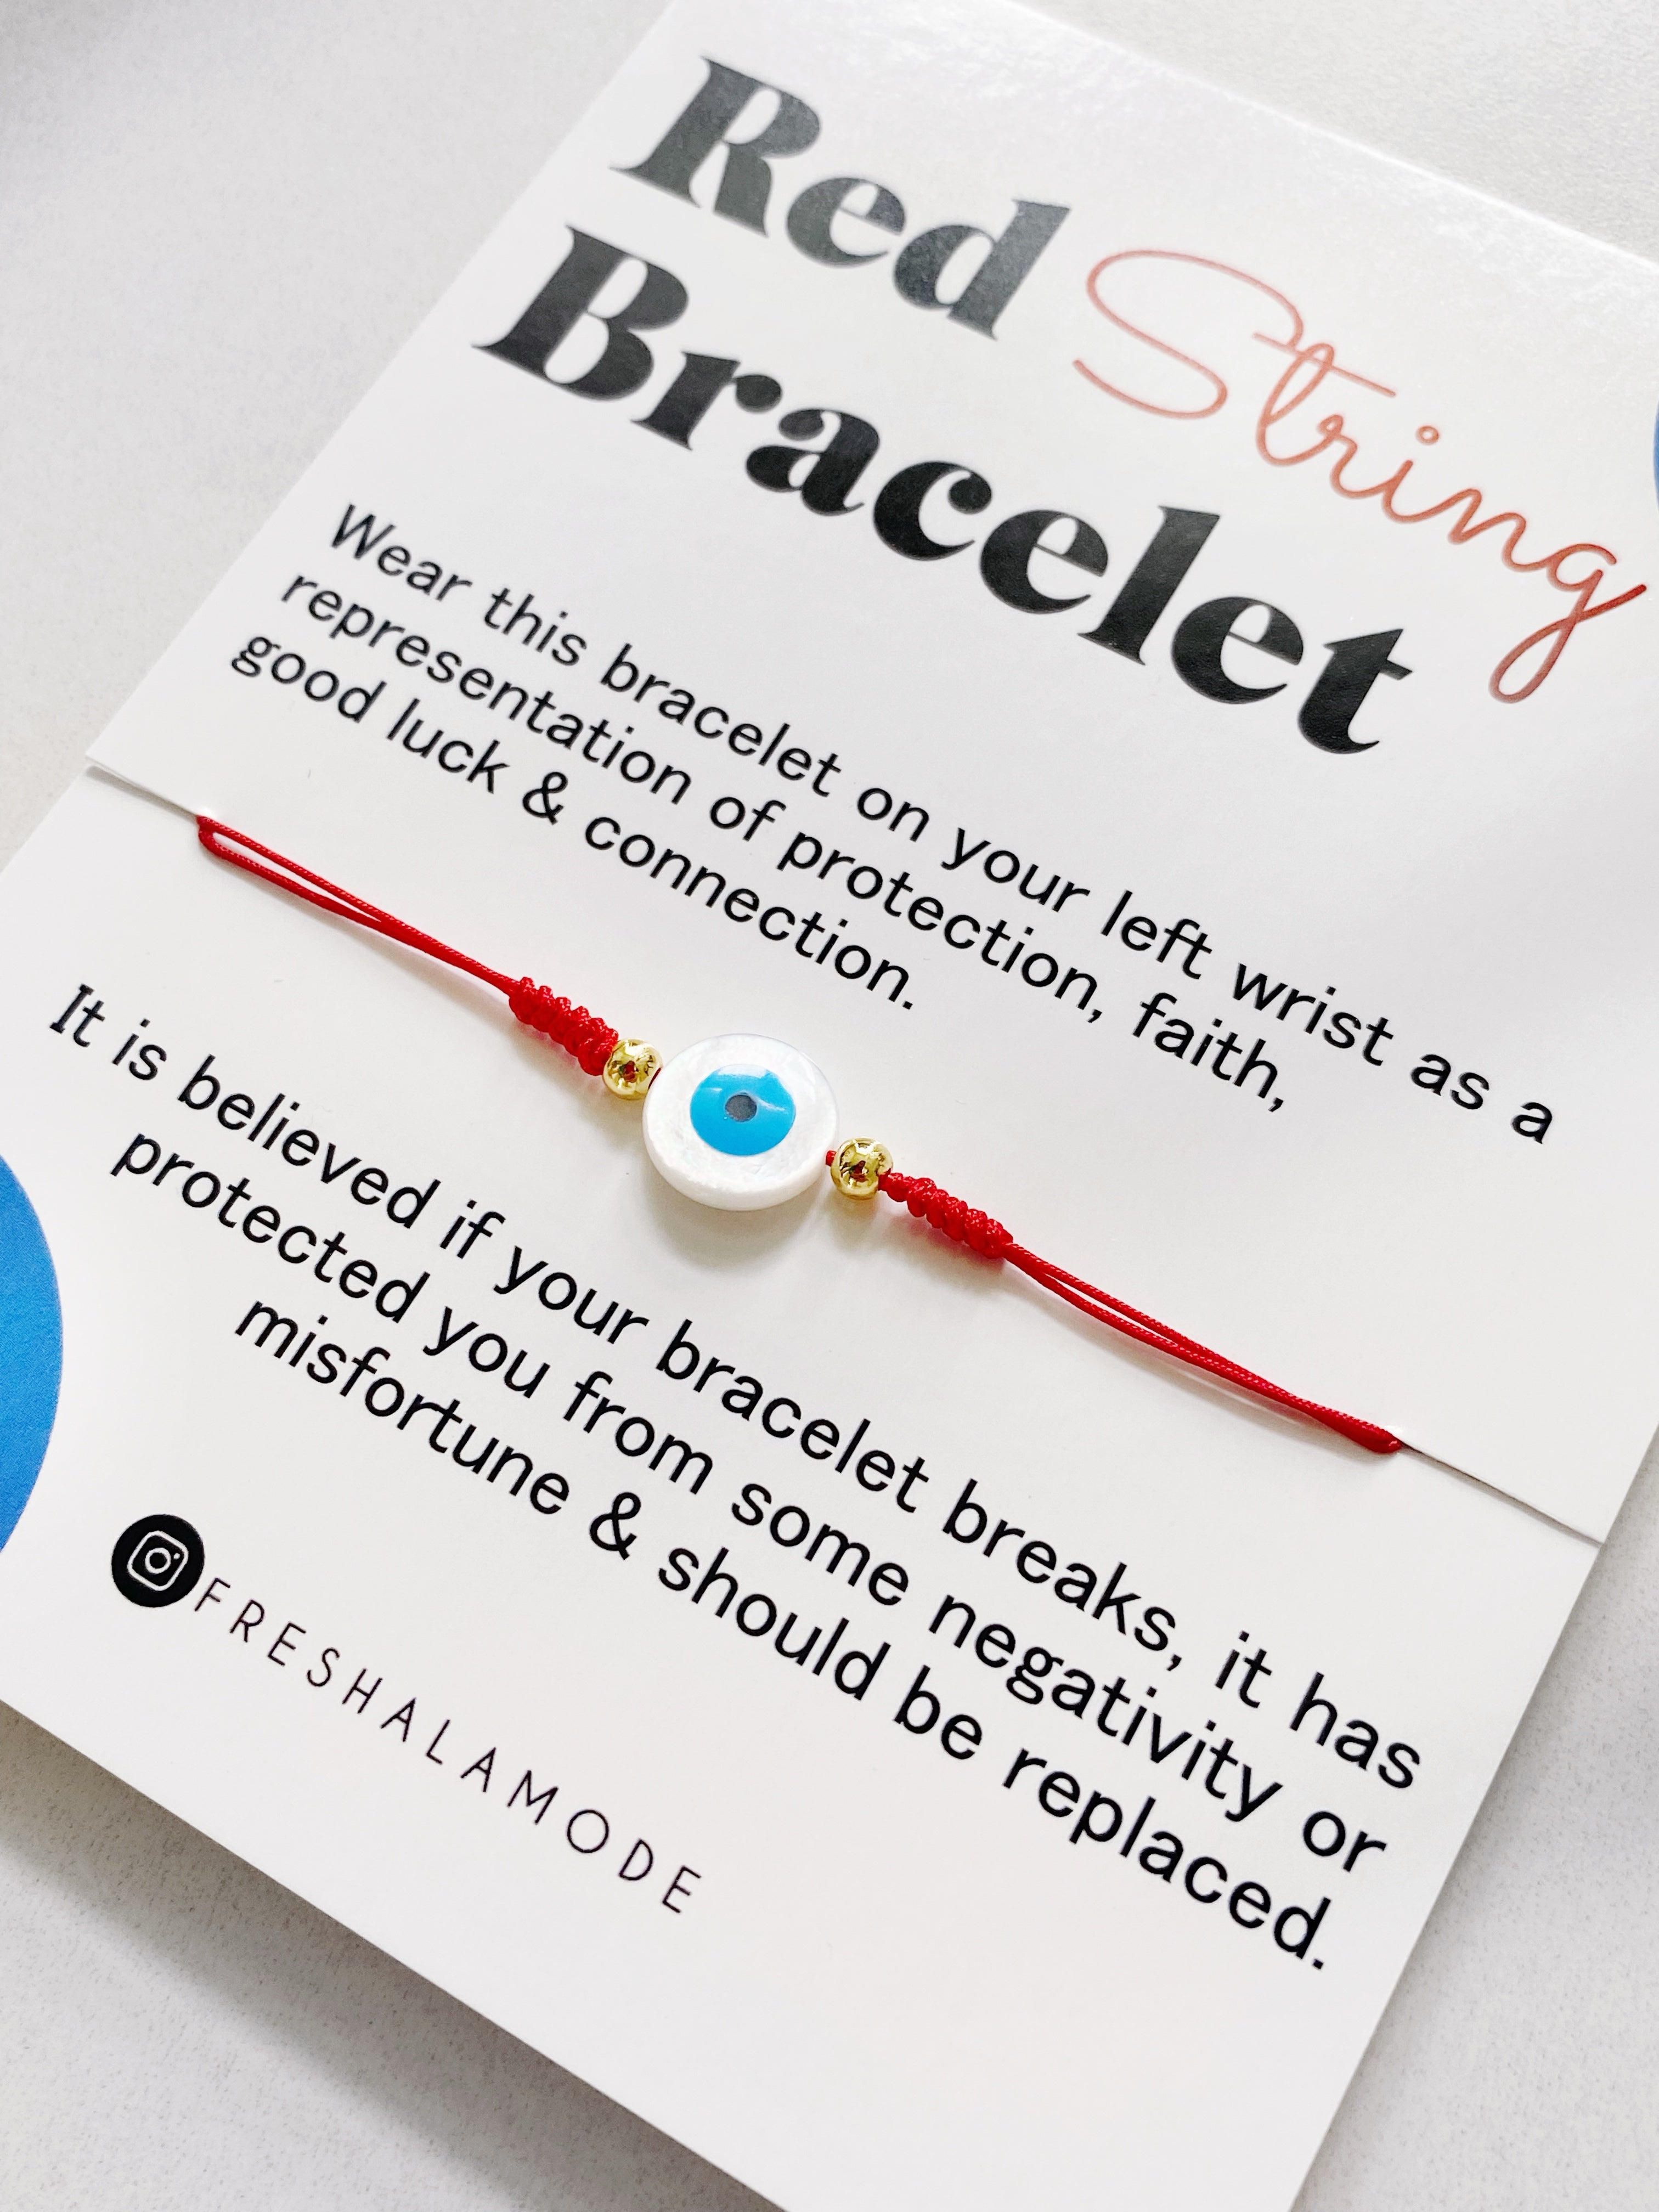 Evil Eye Bracelet Broke: What does it mean? 9 Reasons!